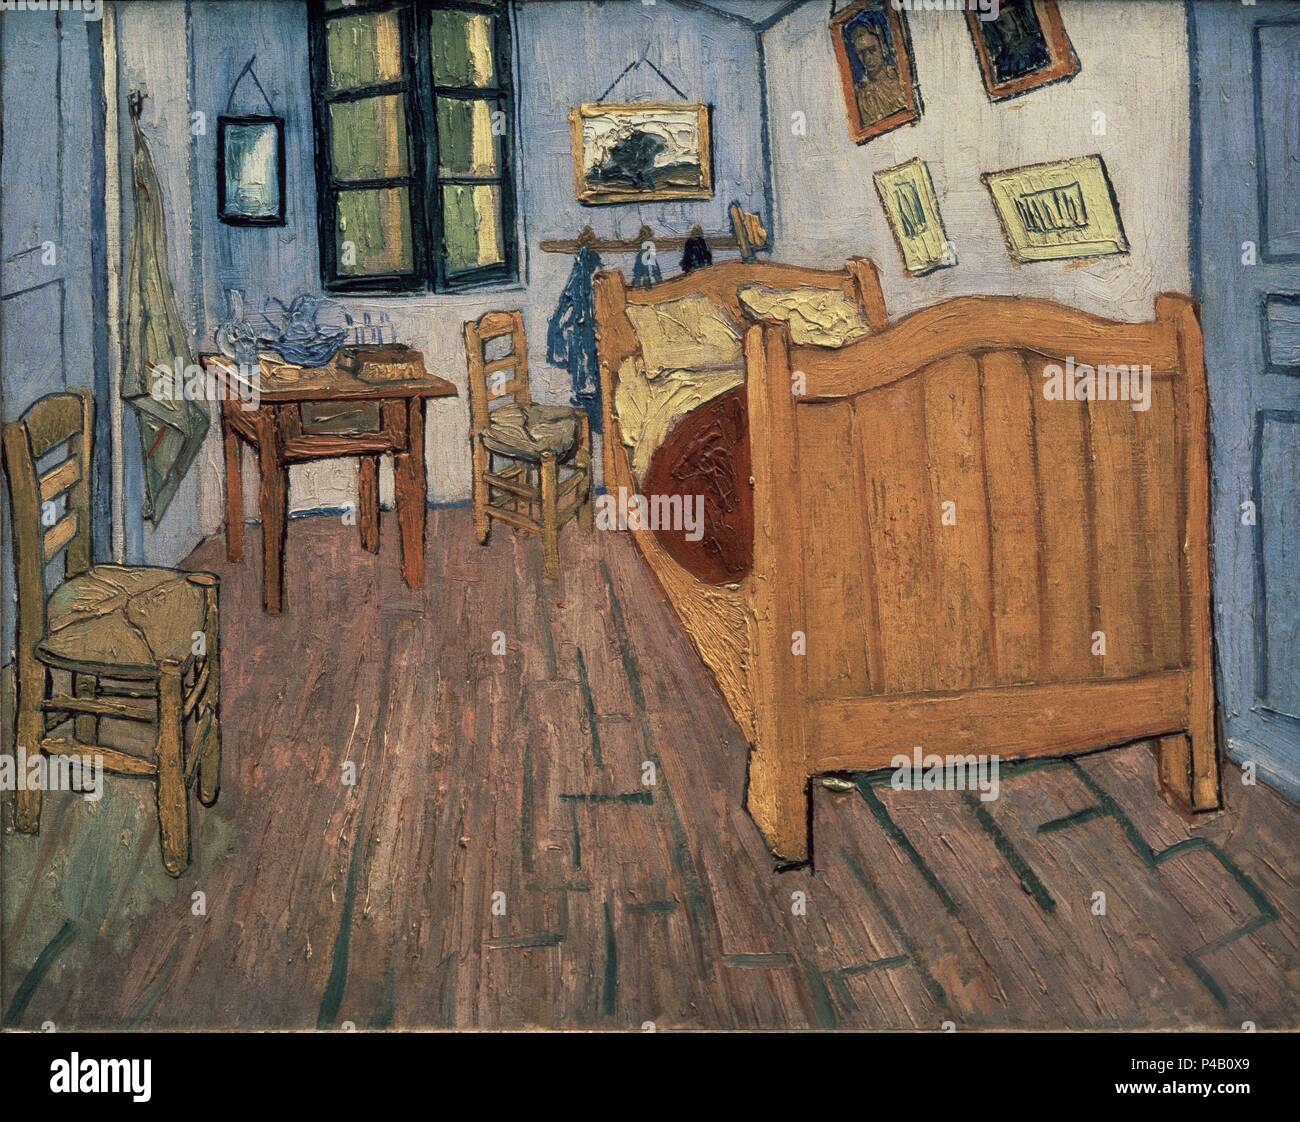 Niederländische Schule. Das Schlafzimmer. 1889. Öl auf Leinwand (57 x 74 cm). Paris, Musée d'Orsay. Autor: Vincent van Gogh (1853-1890). Ort: Van Gogh Museum, Amsterdam, HOLANDA. Stockfoto